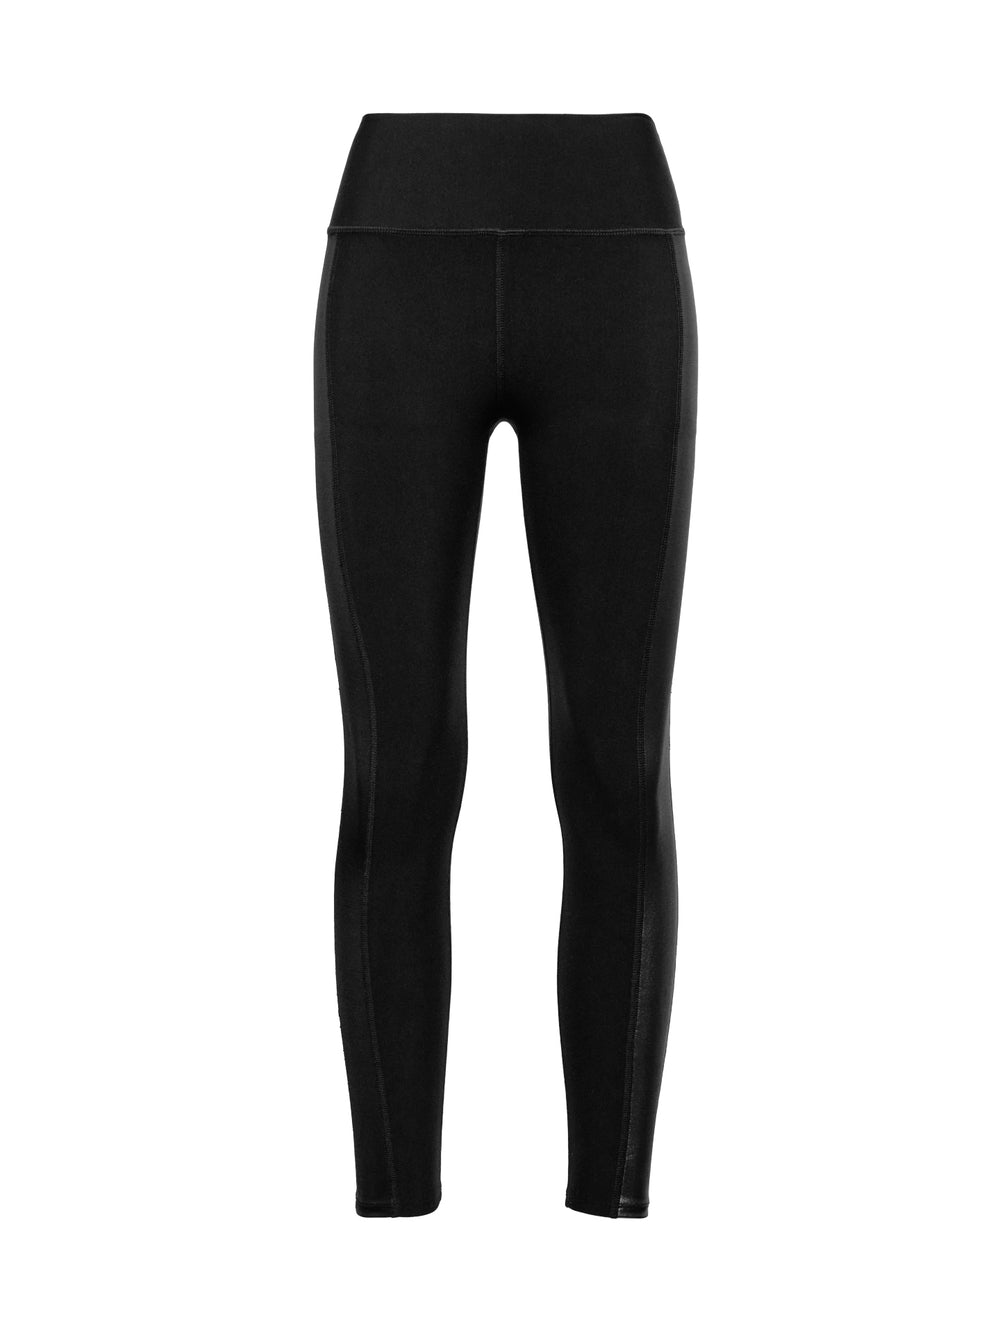 Carbon38, Pants & Jumpsuits, Carbon38 Grey Charcoal Liquid Leggings Size  Xs